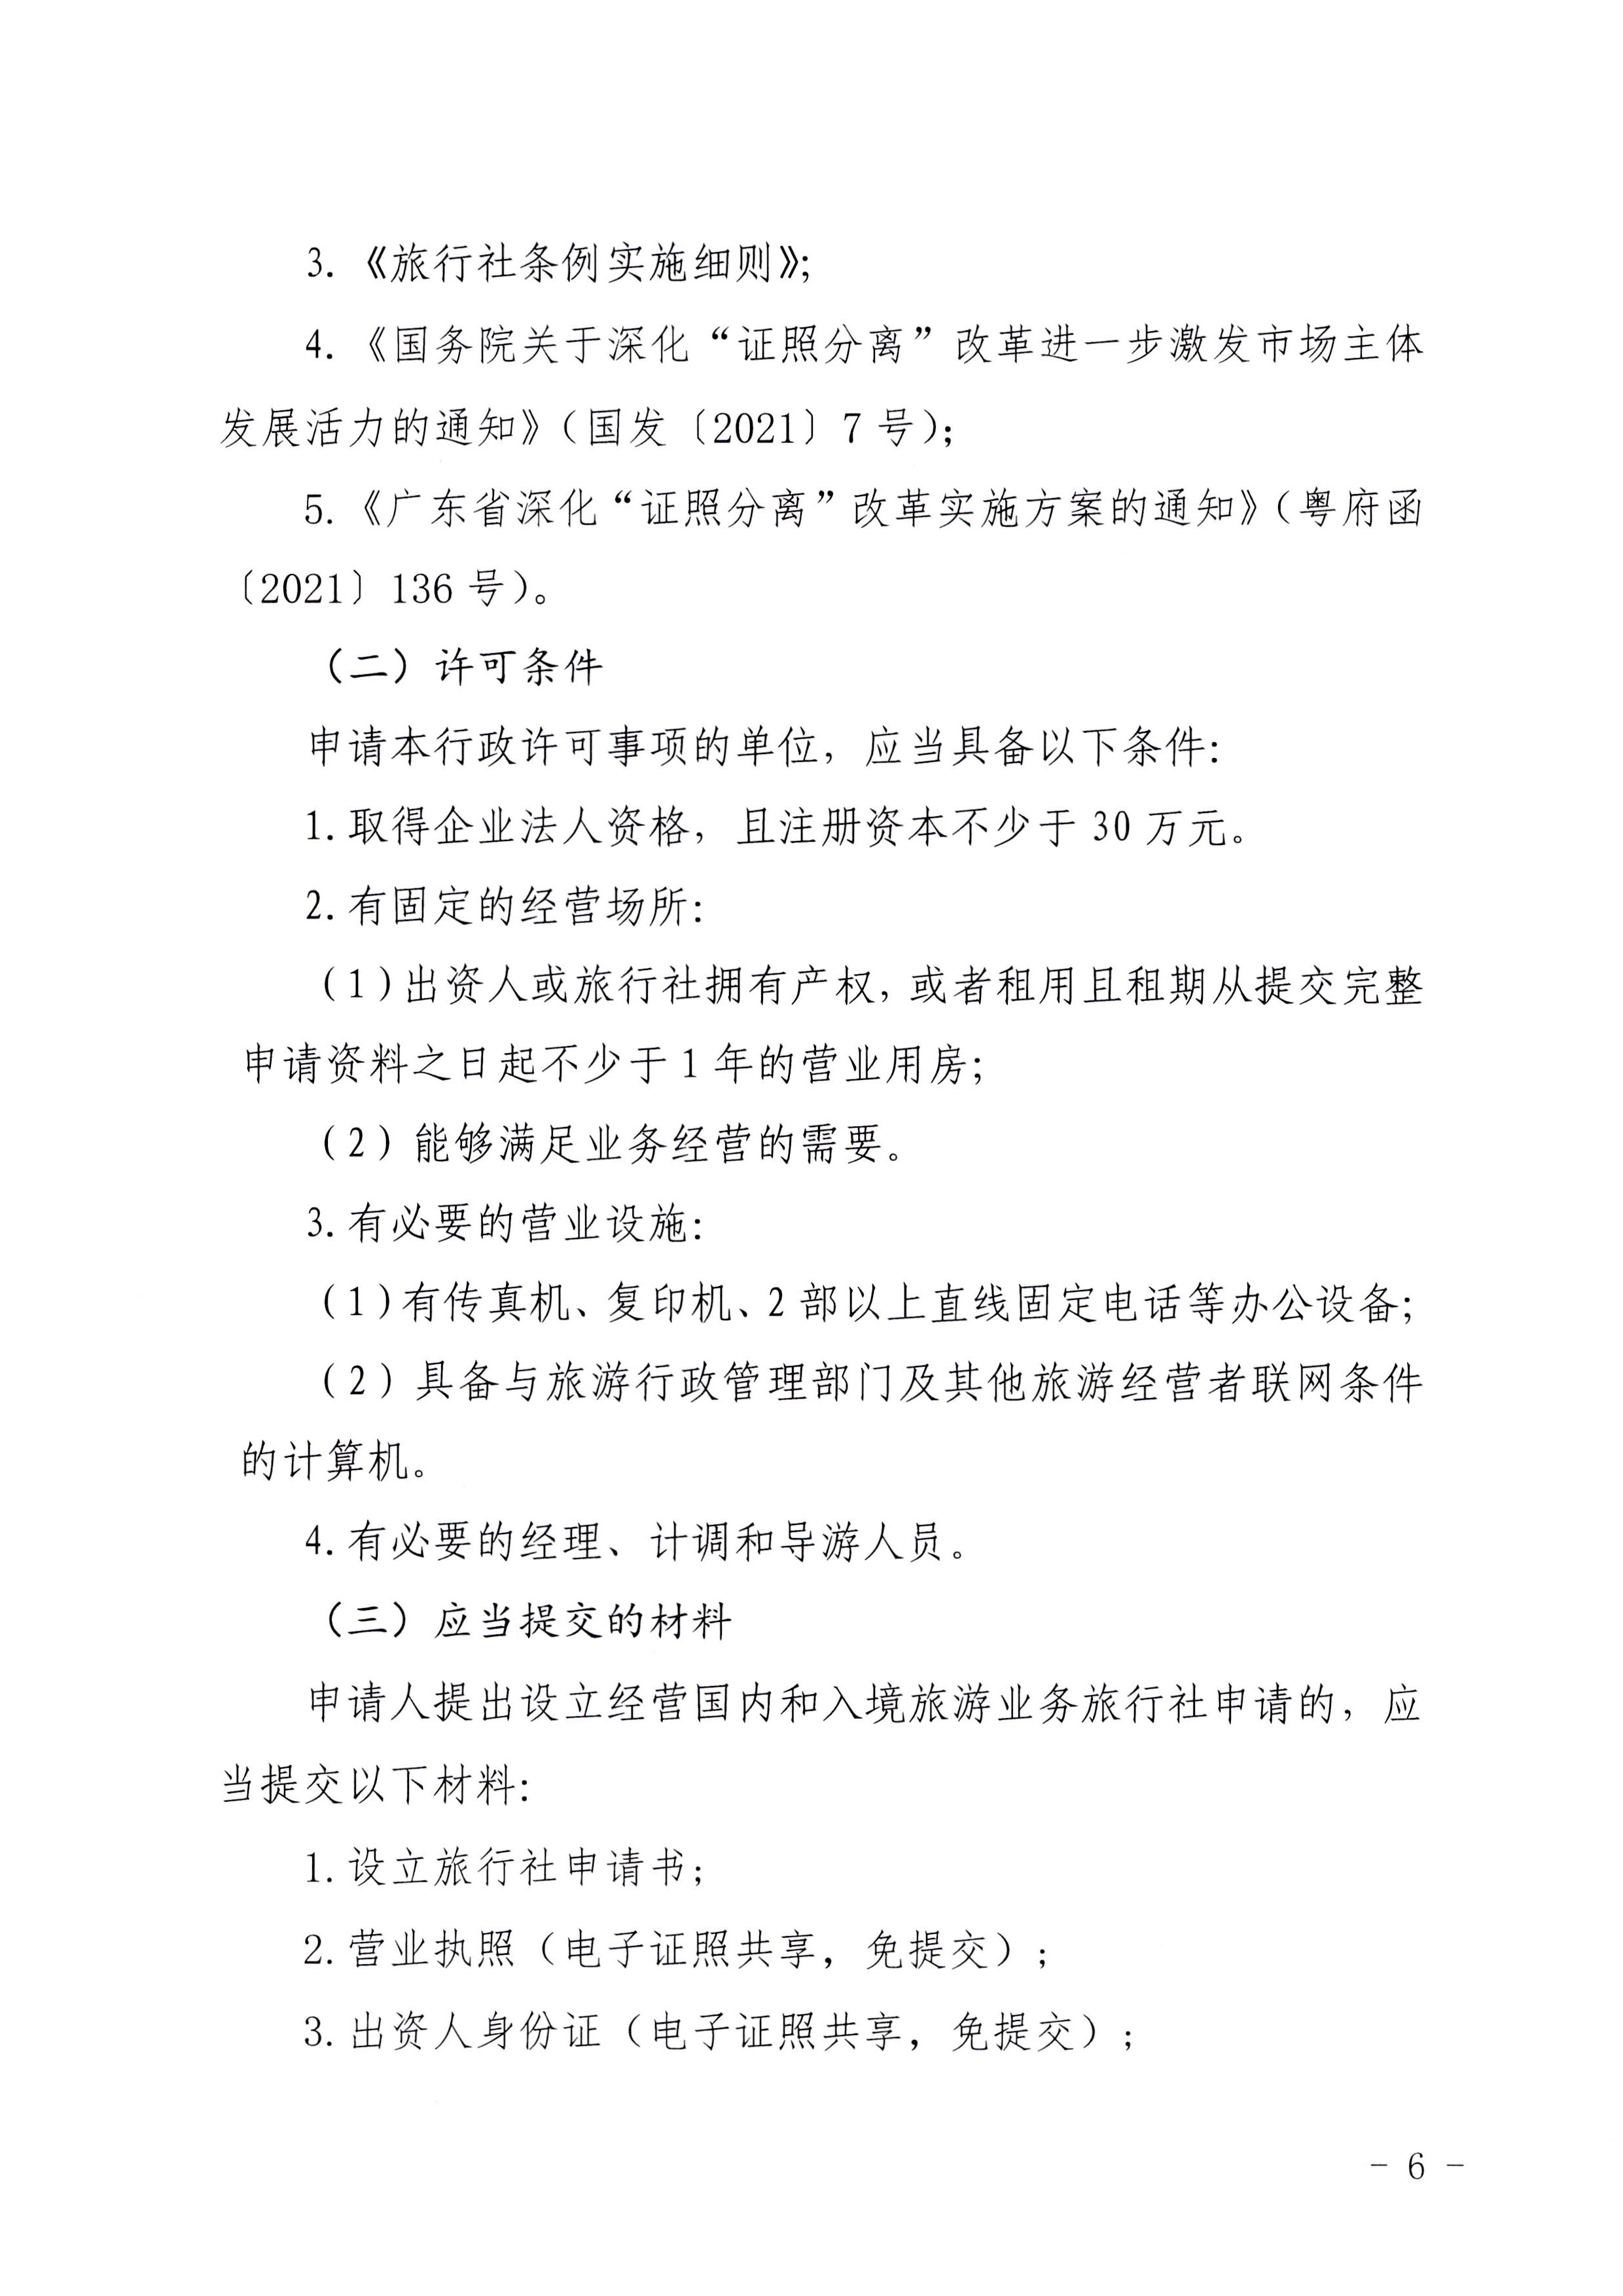 广东省文化和旅游厅印发证照分离改革实施方案的通知_页面_42.jpg